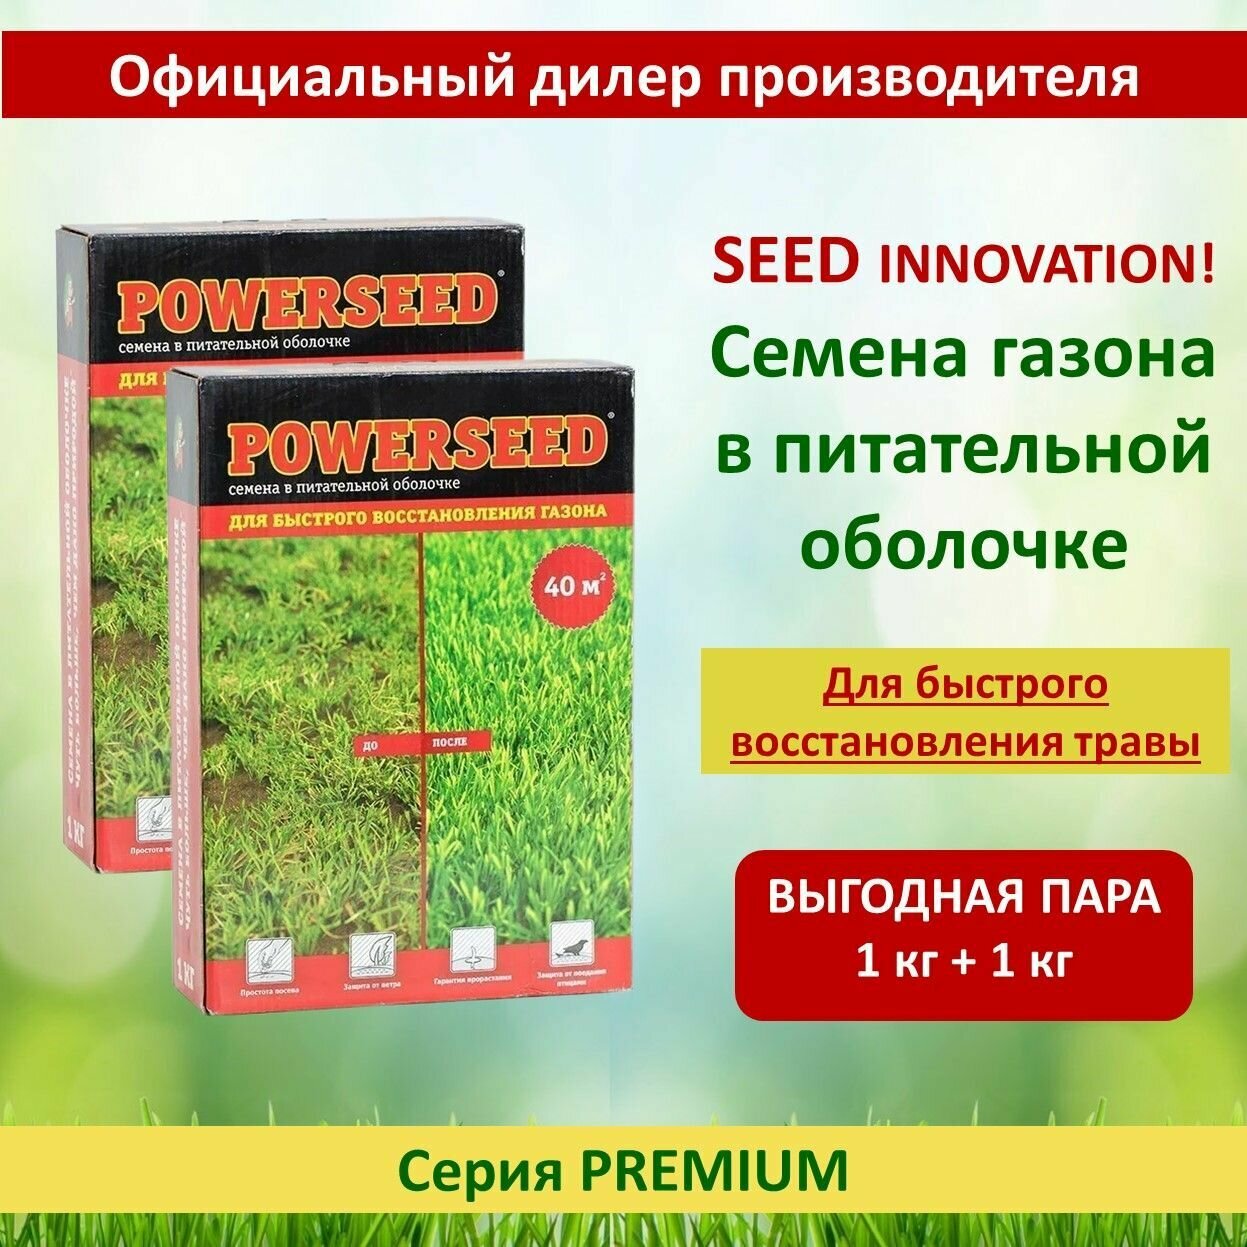 Семена в питательной оболочке Powerseed для быстрого восстановления газона 1 кг х 2 